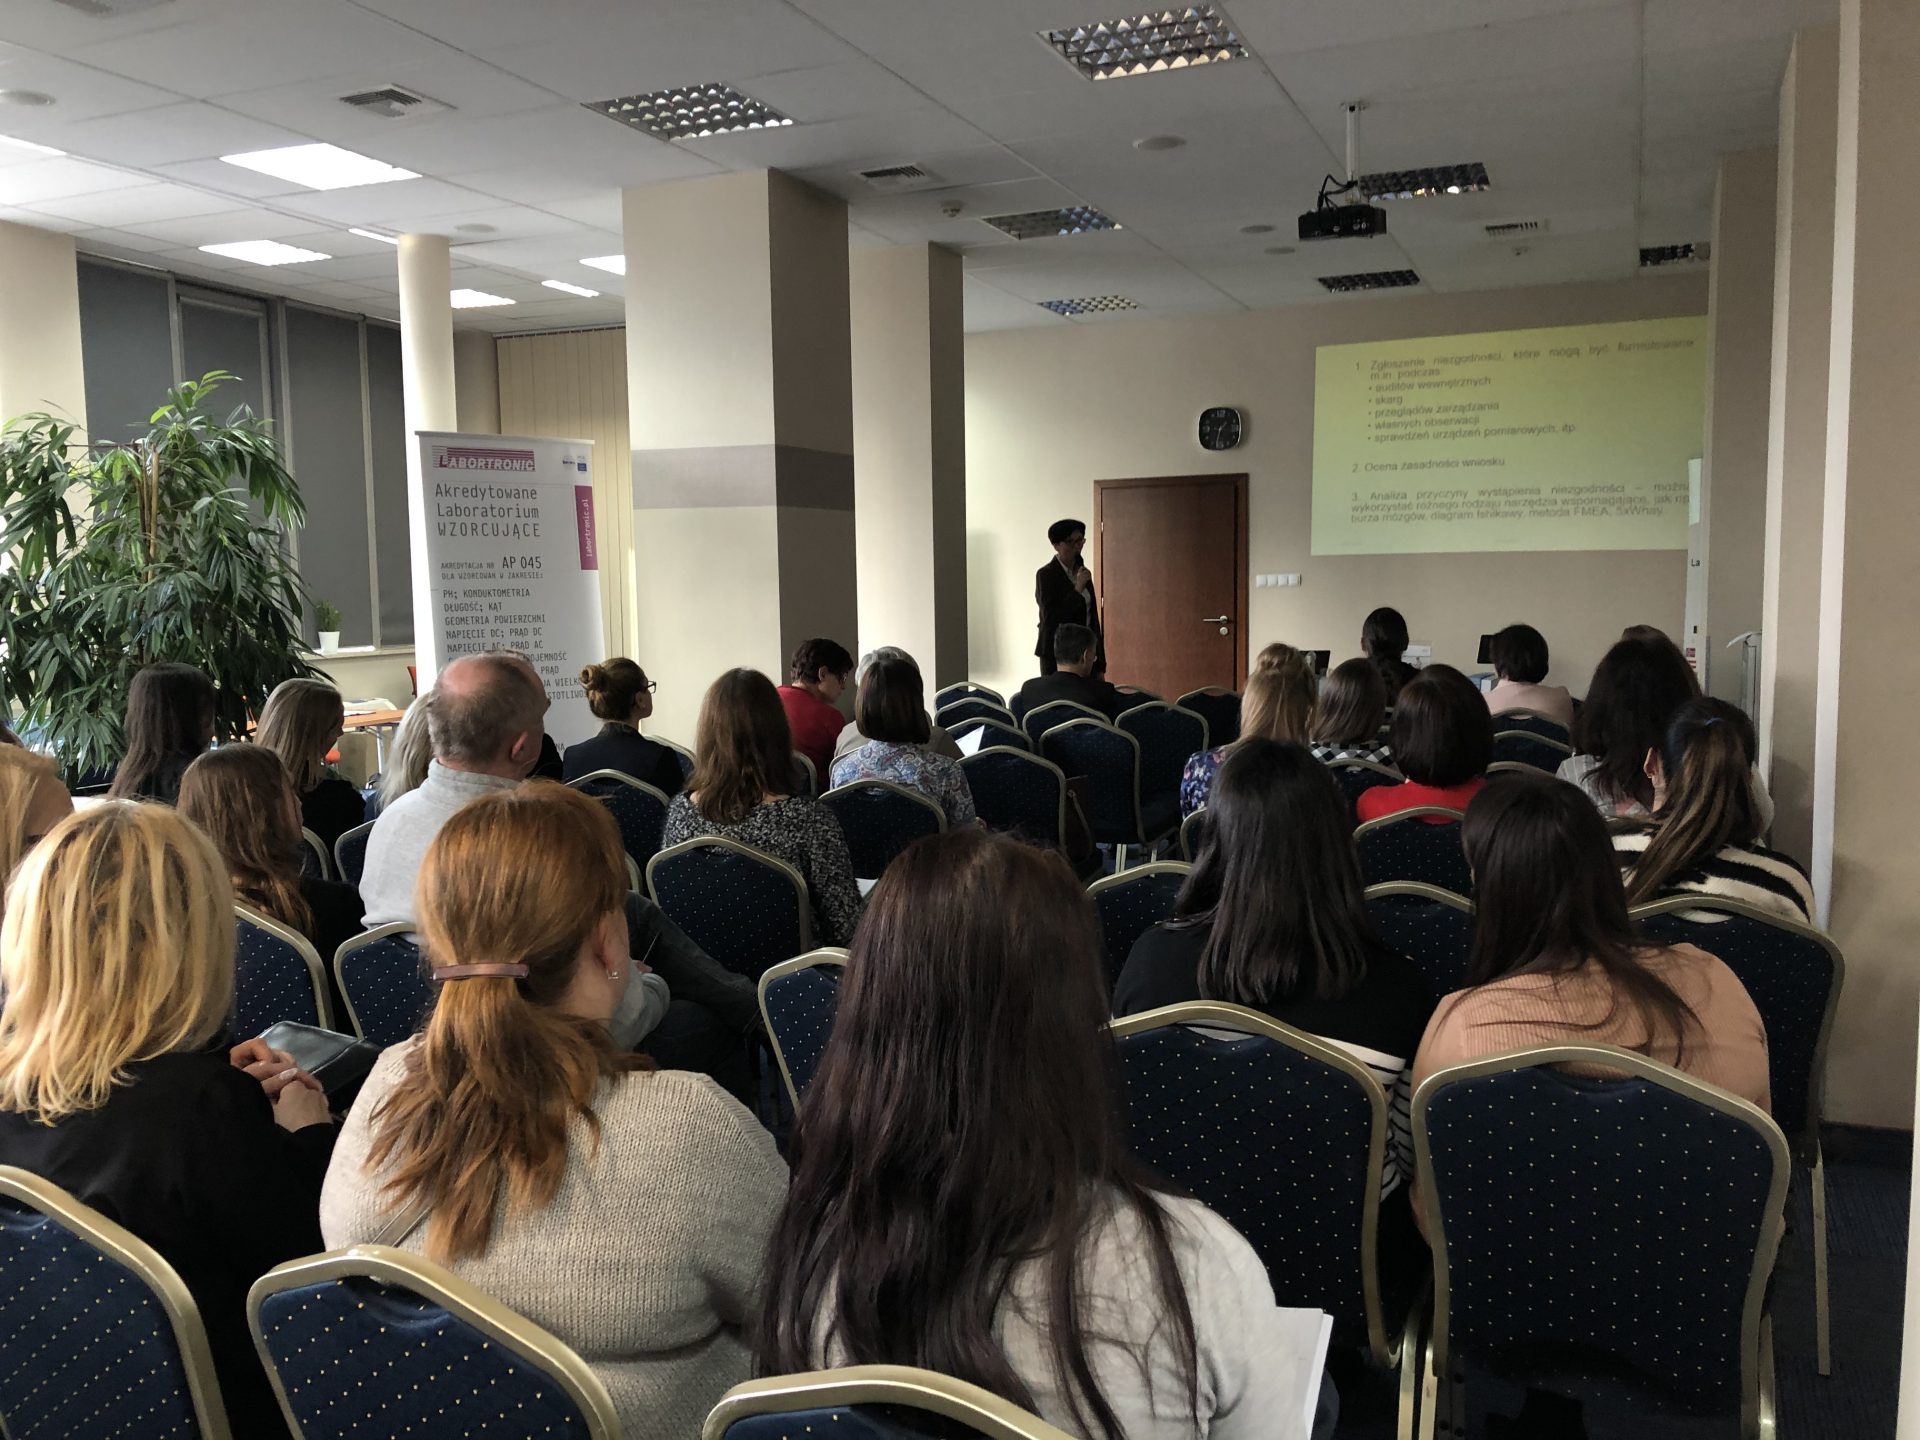 Grudzień 2019, Spotkanie Sekcji Ochrony Środowiska Klubu POLLAB, Kielce